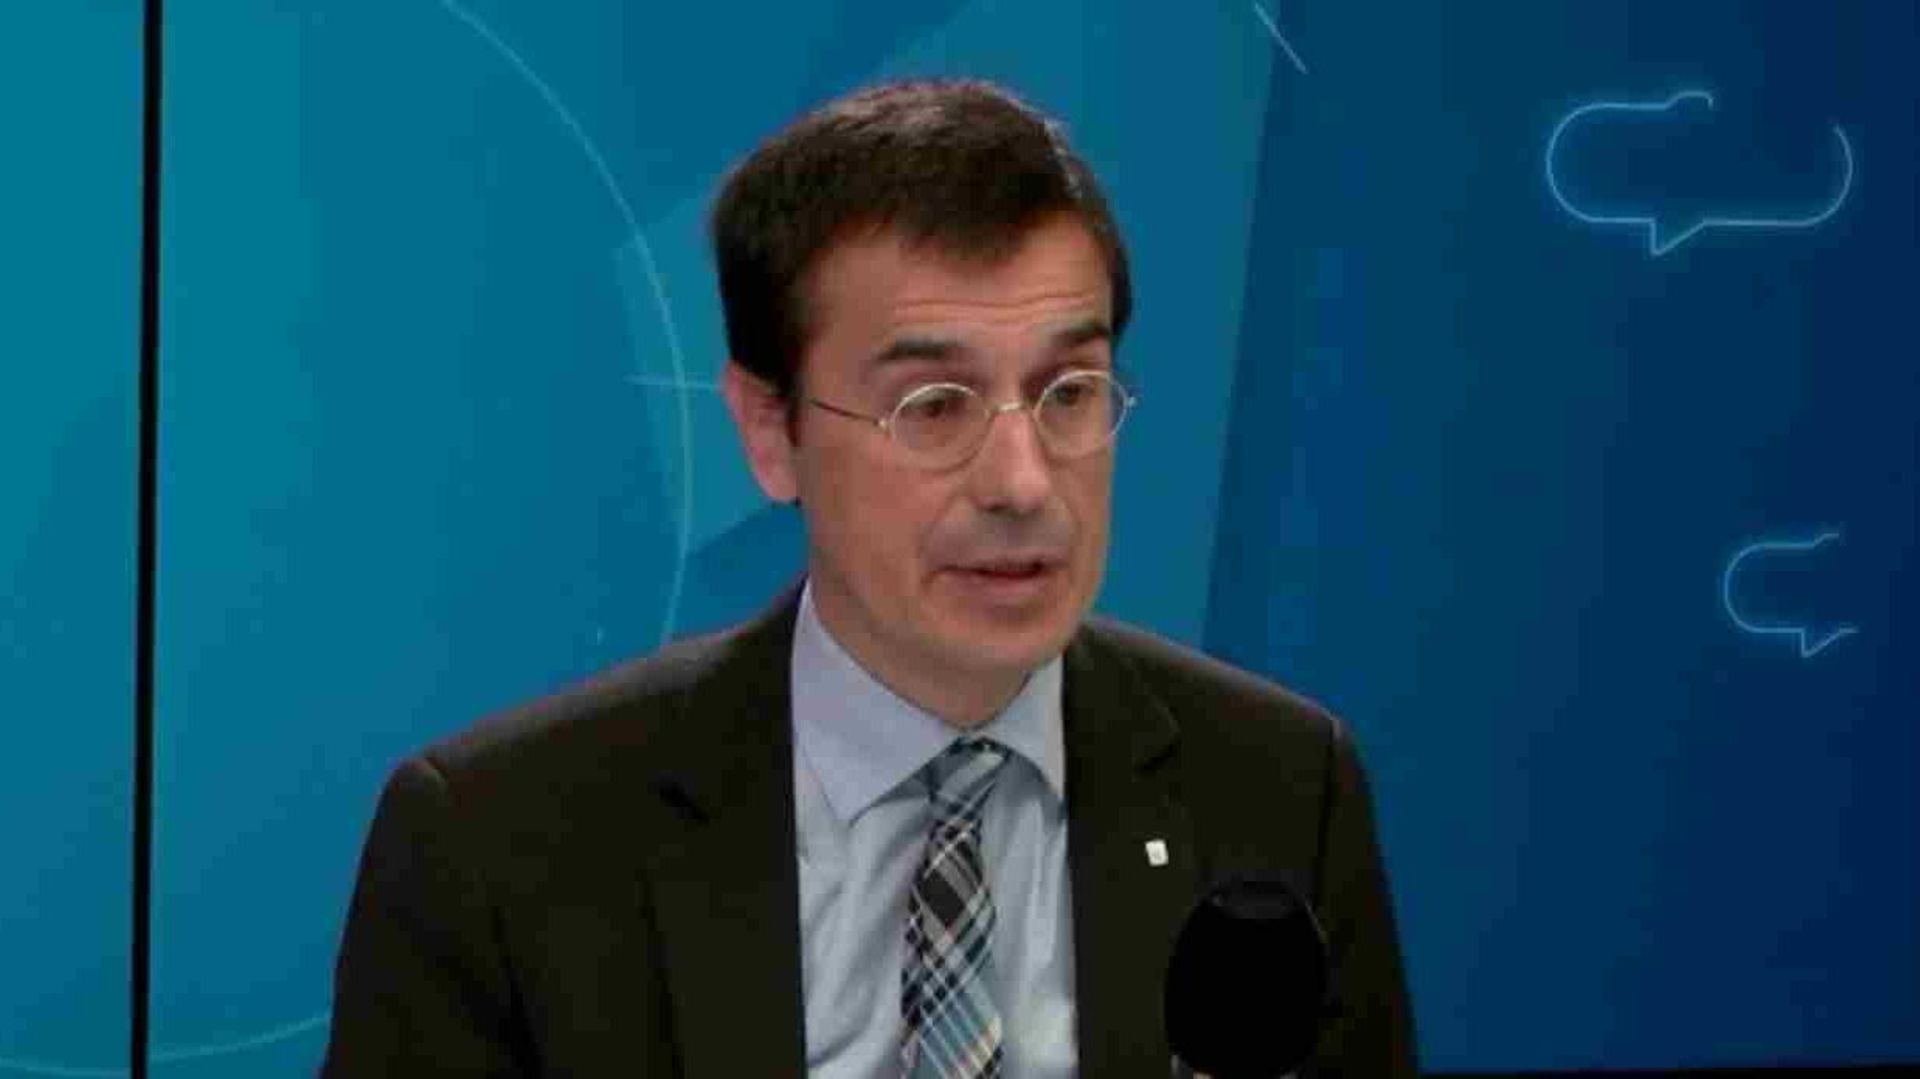 Amadeu Altafaj, le représentant du gouvernement catalan auprès de l'Union européenne 